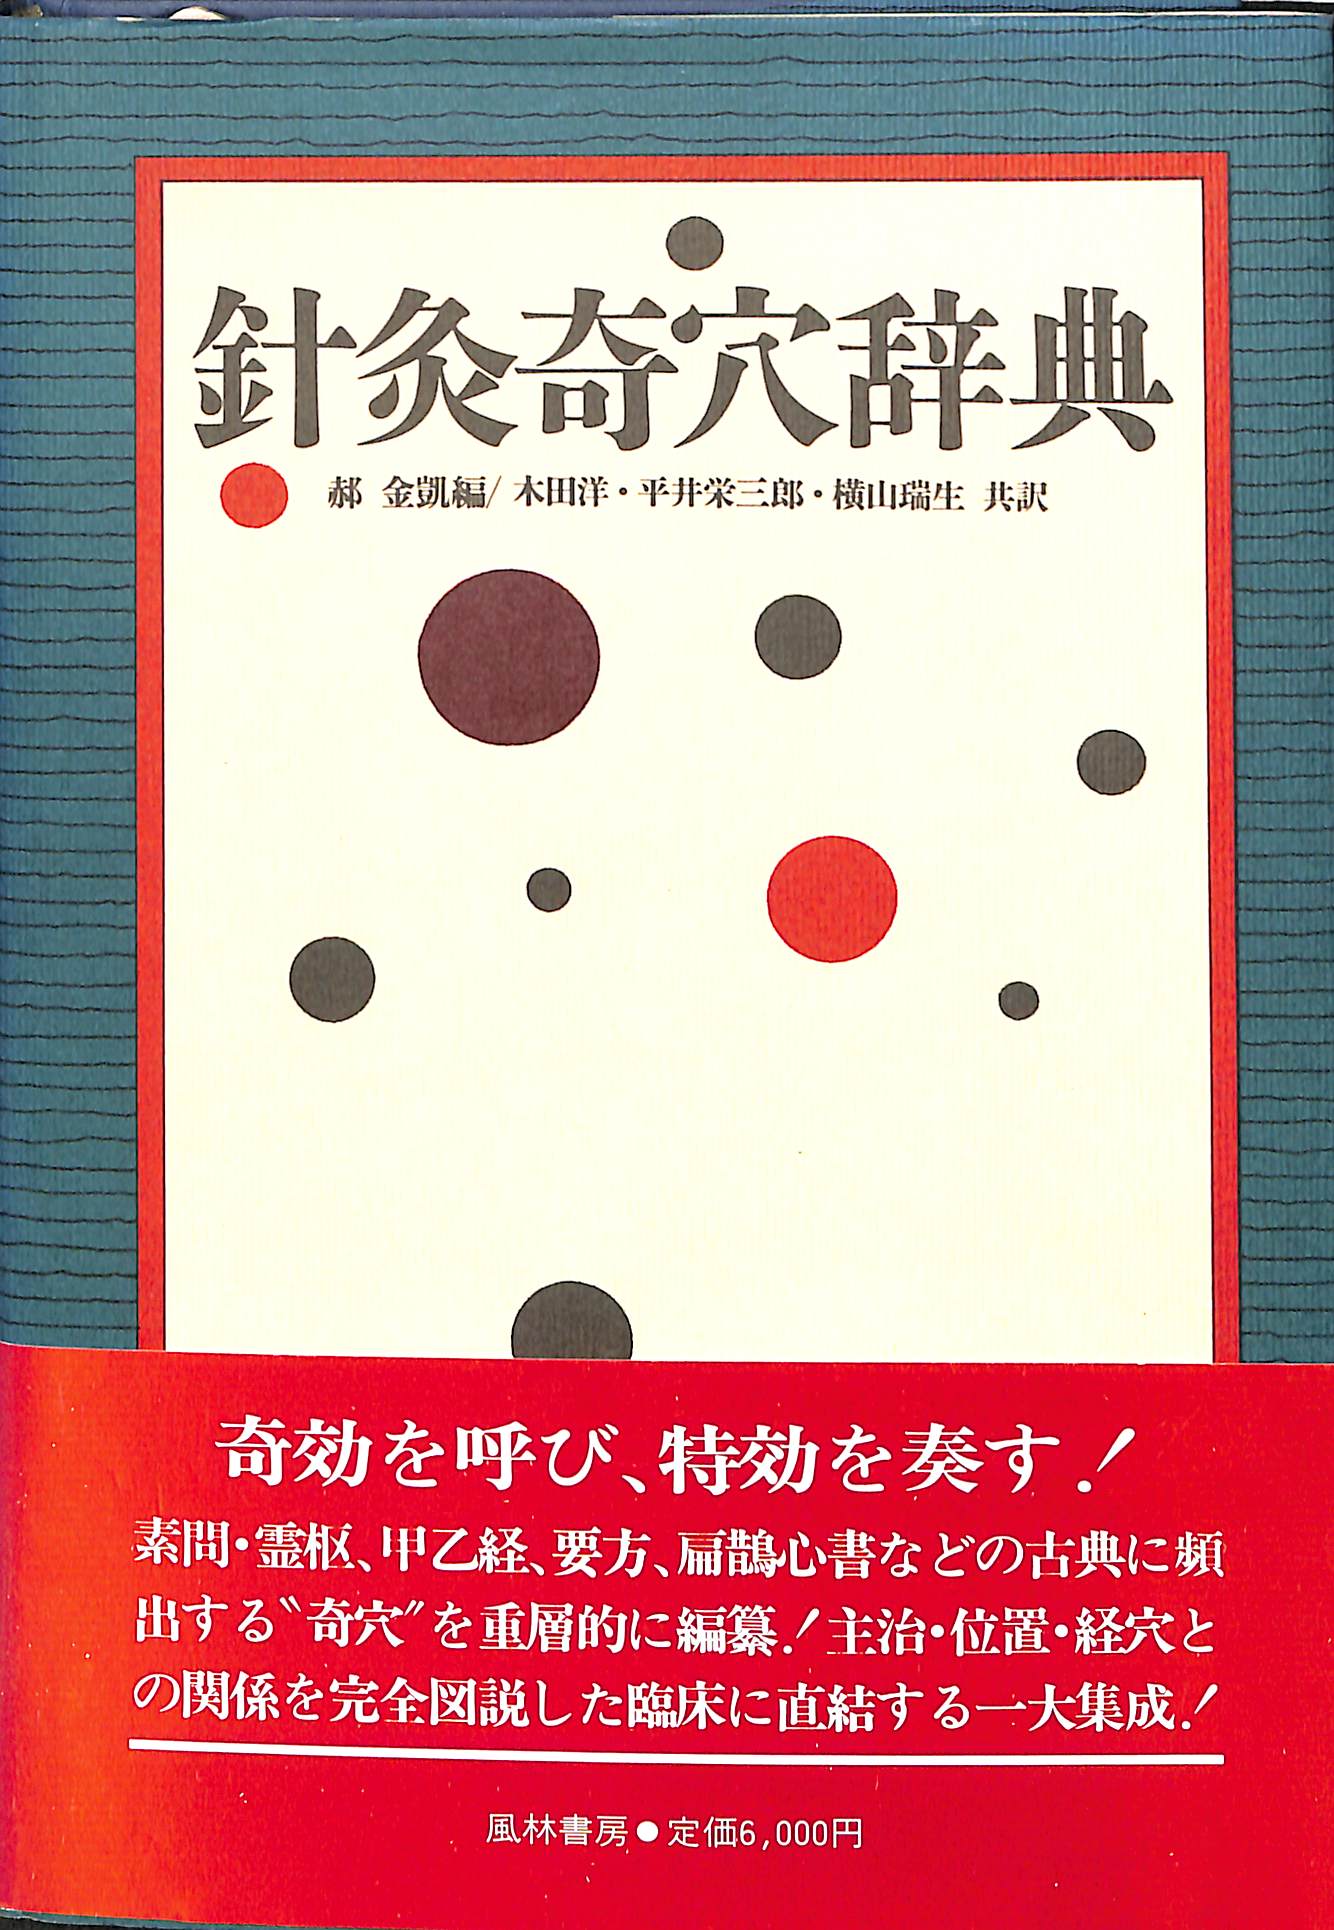 針灸奇穴辞典 木田洋 ほか 訳 | 古本よみた屋 おじいさんの本、買います。